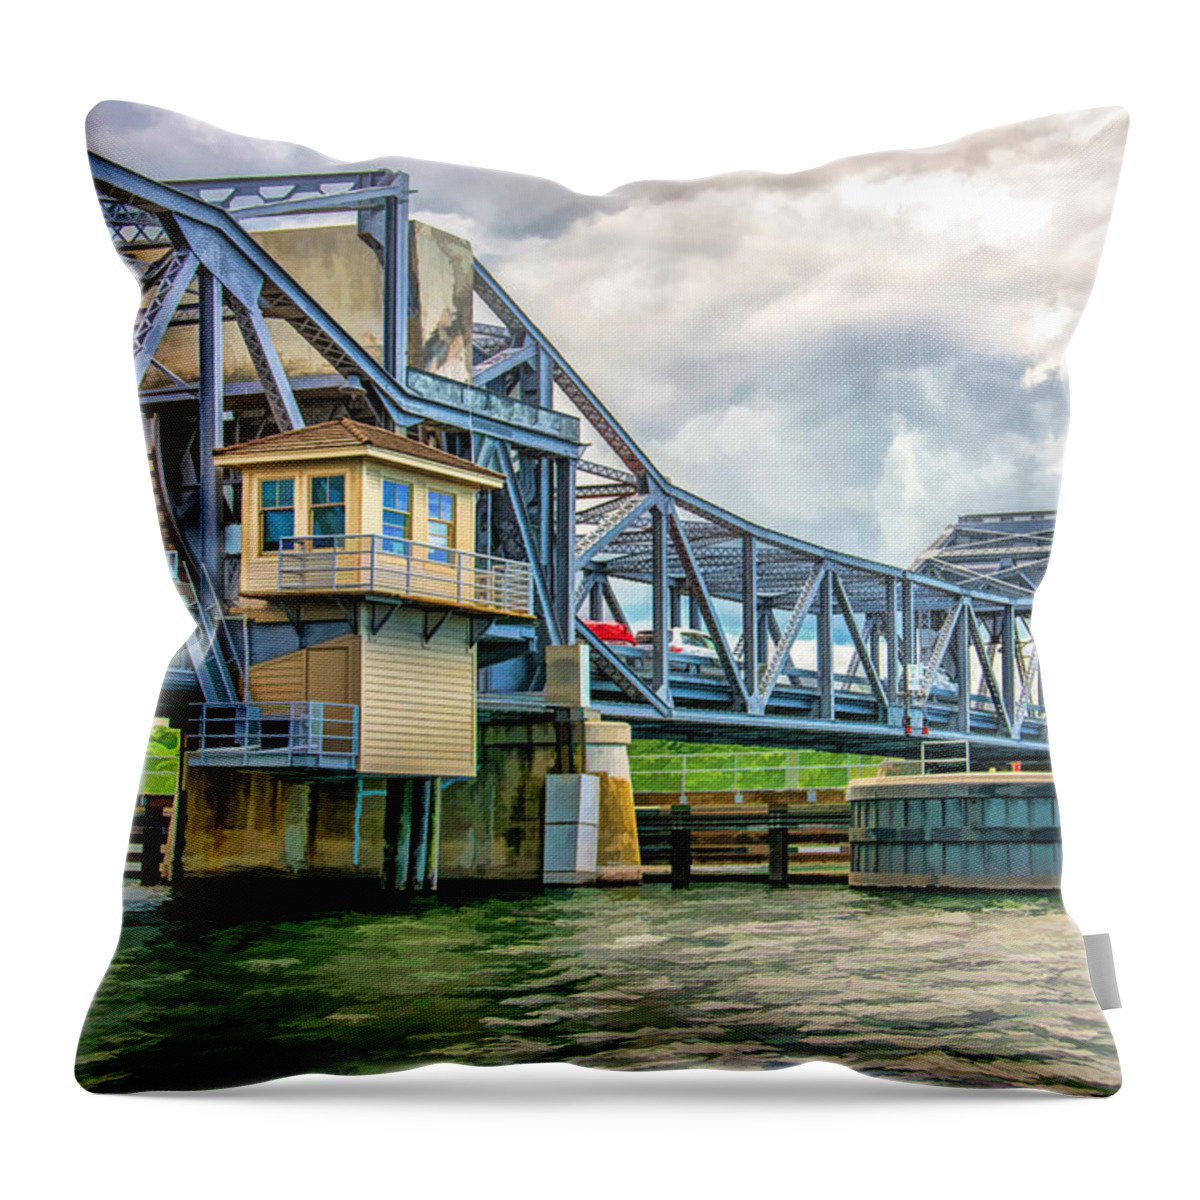 Door County Throw Pillow featuring the painting Sturgeon Bay Historic Michigan Street Bridge in Door County by Christopher Arndt